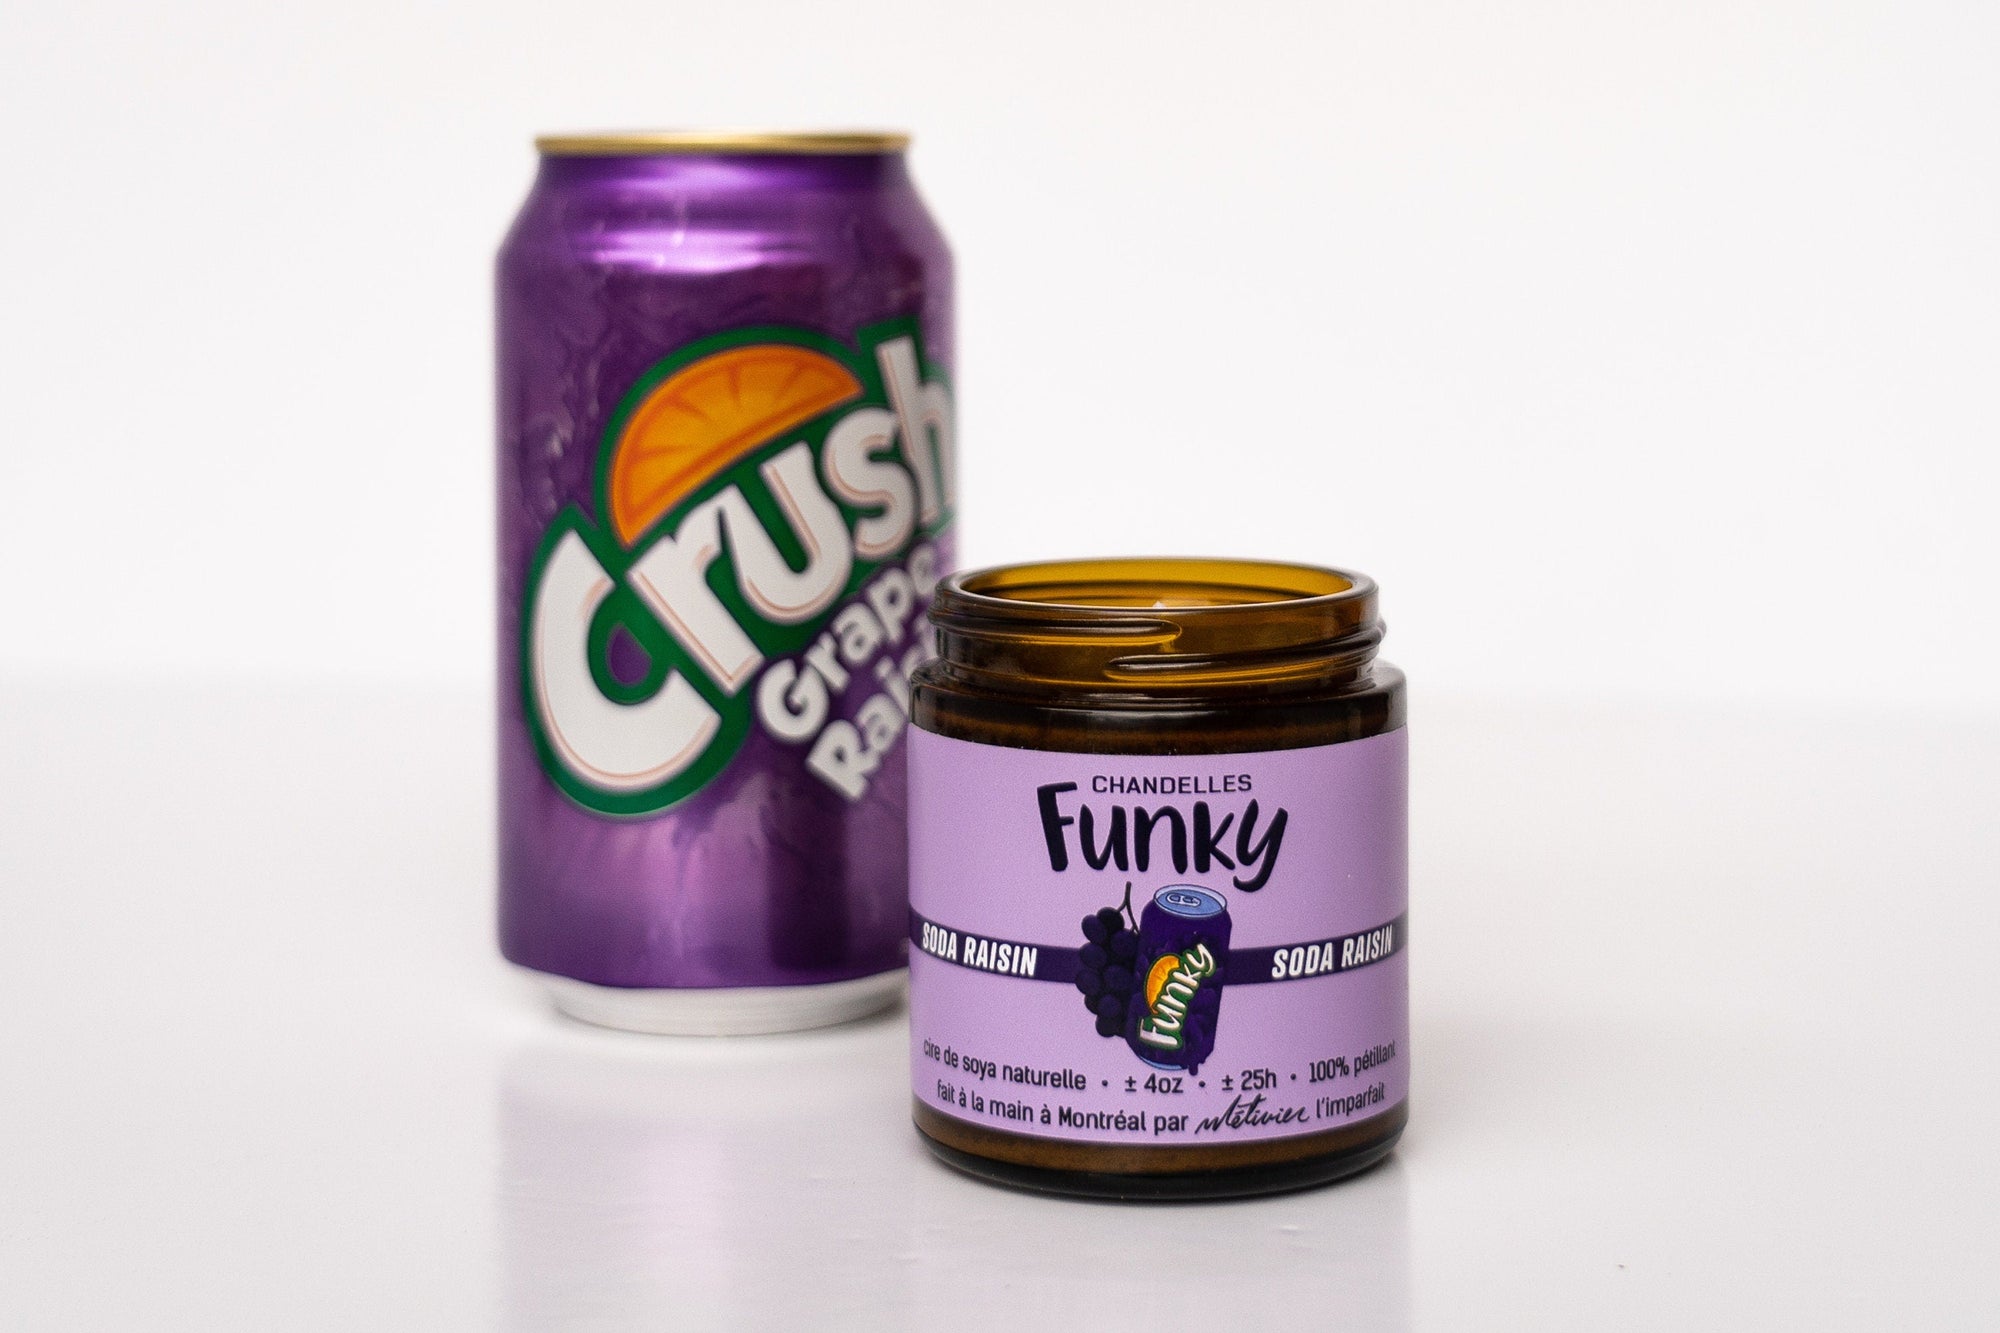 Chandelle Soda Raisin - Funky - Funky & Co.